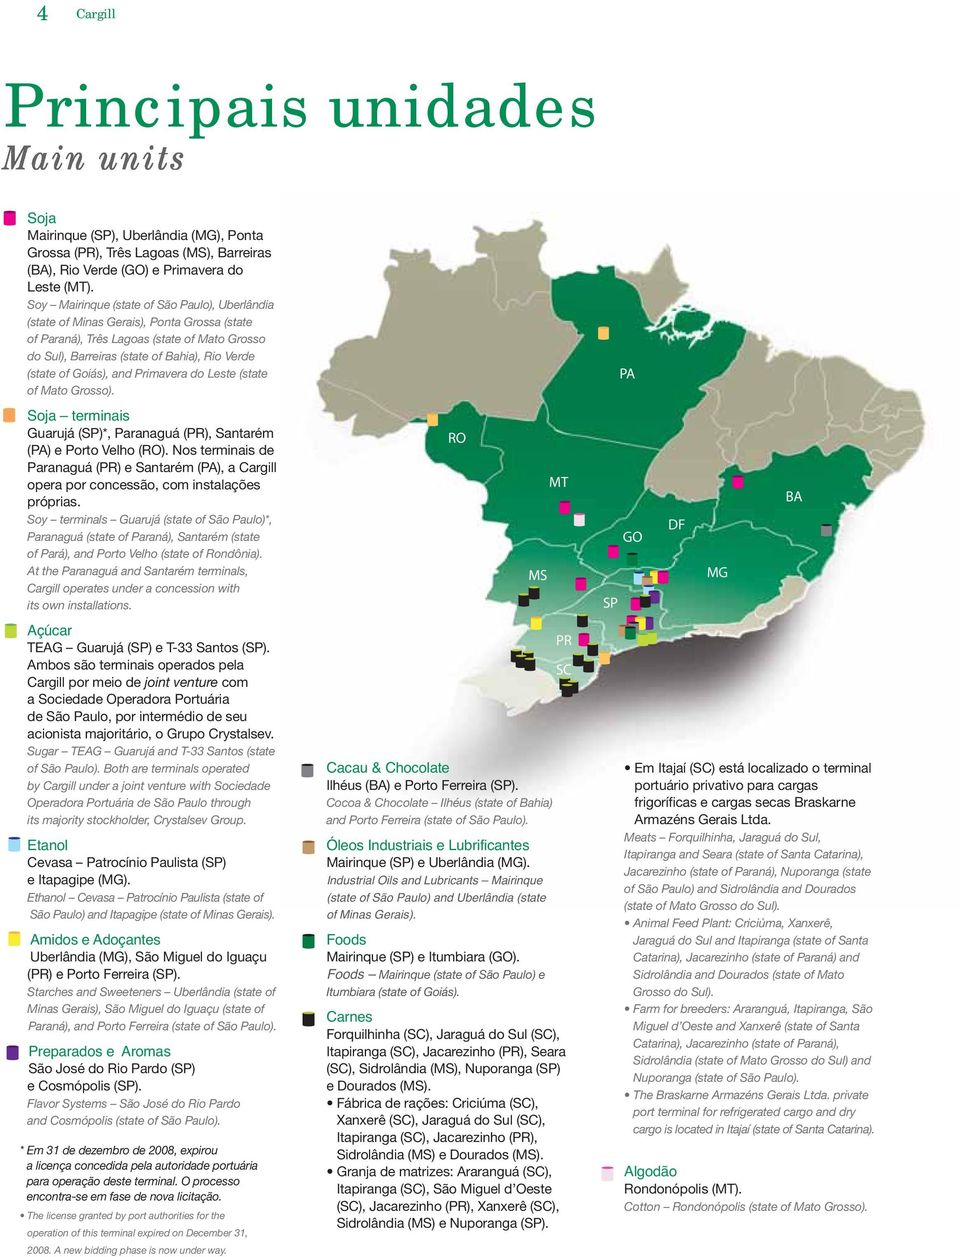 Goiás), and Primavera do Leste (state of Mato Grosso). Soja terminais Guarujá (SP)*, Paranaguá (PR), Santarém (PA) e Porto Velho (RO).